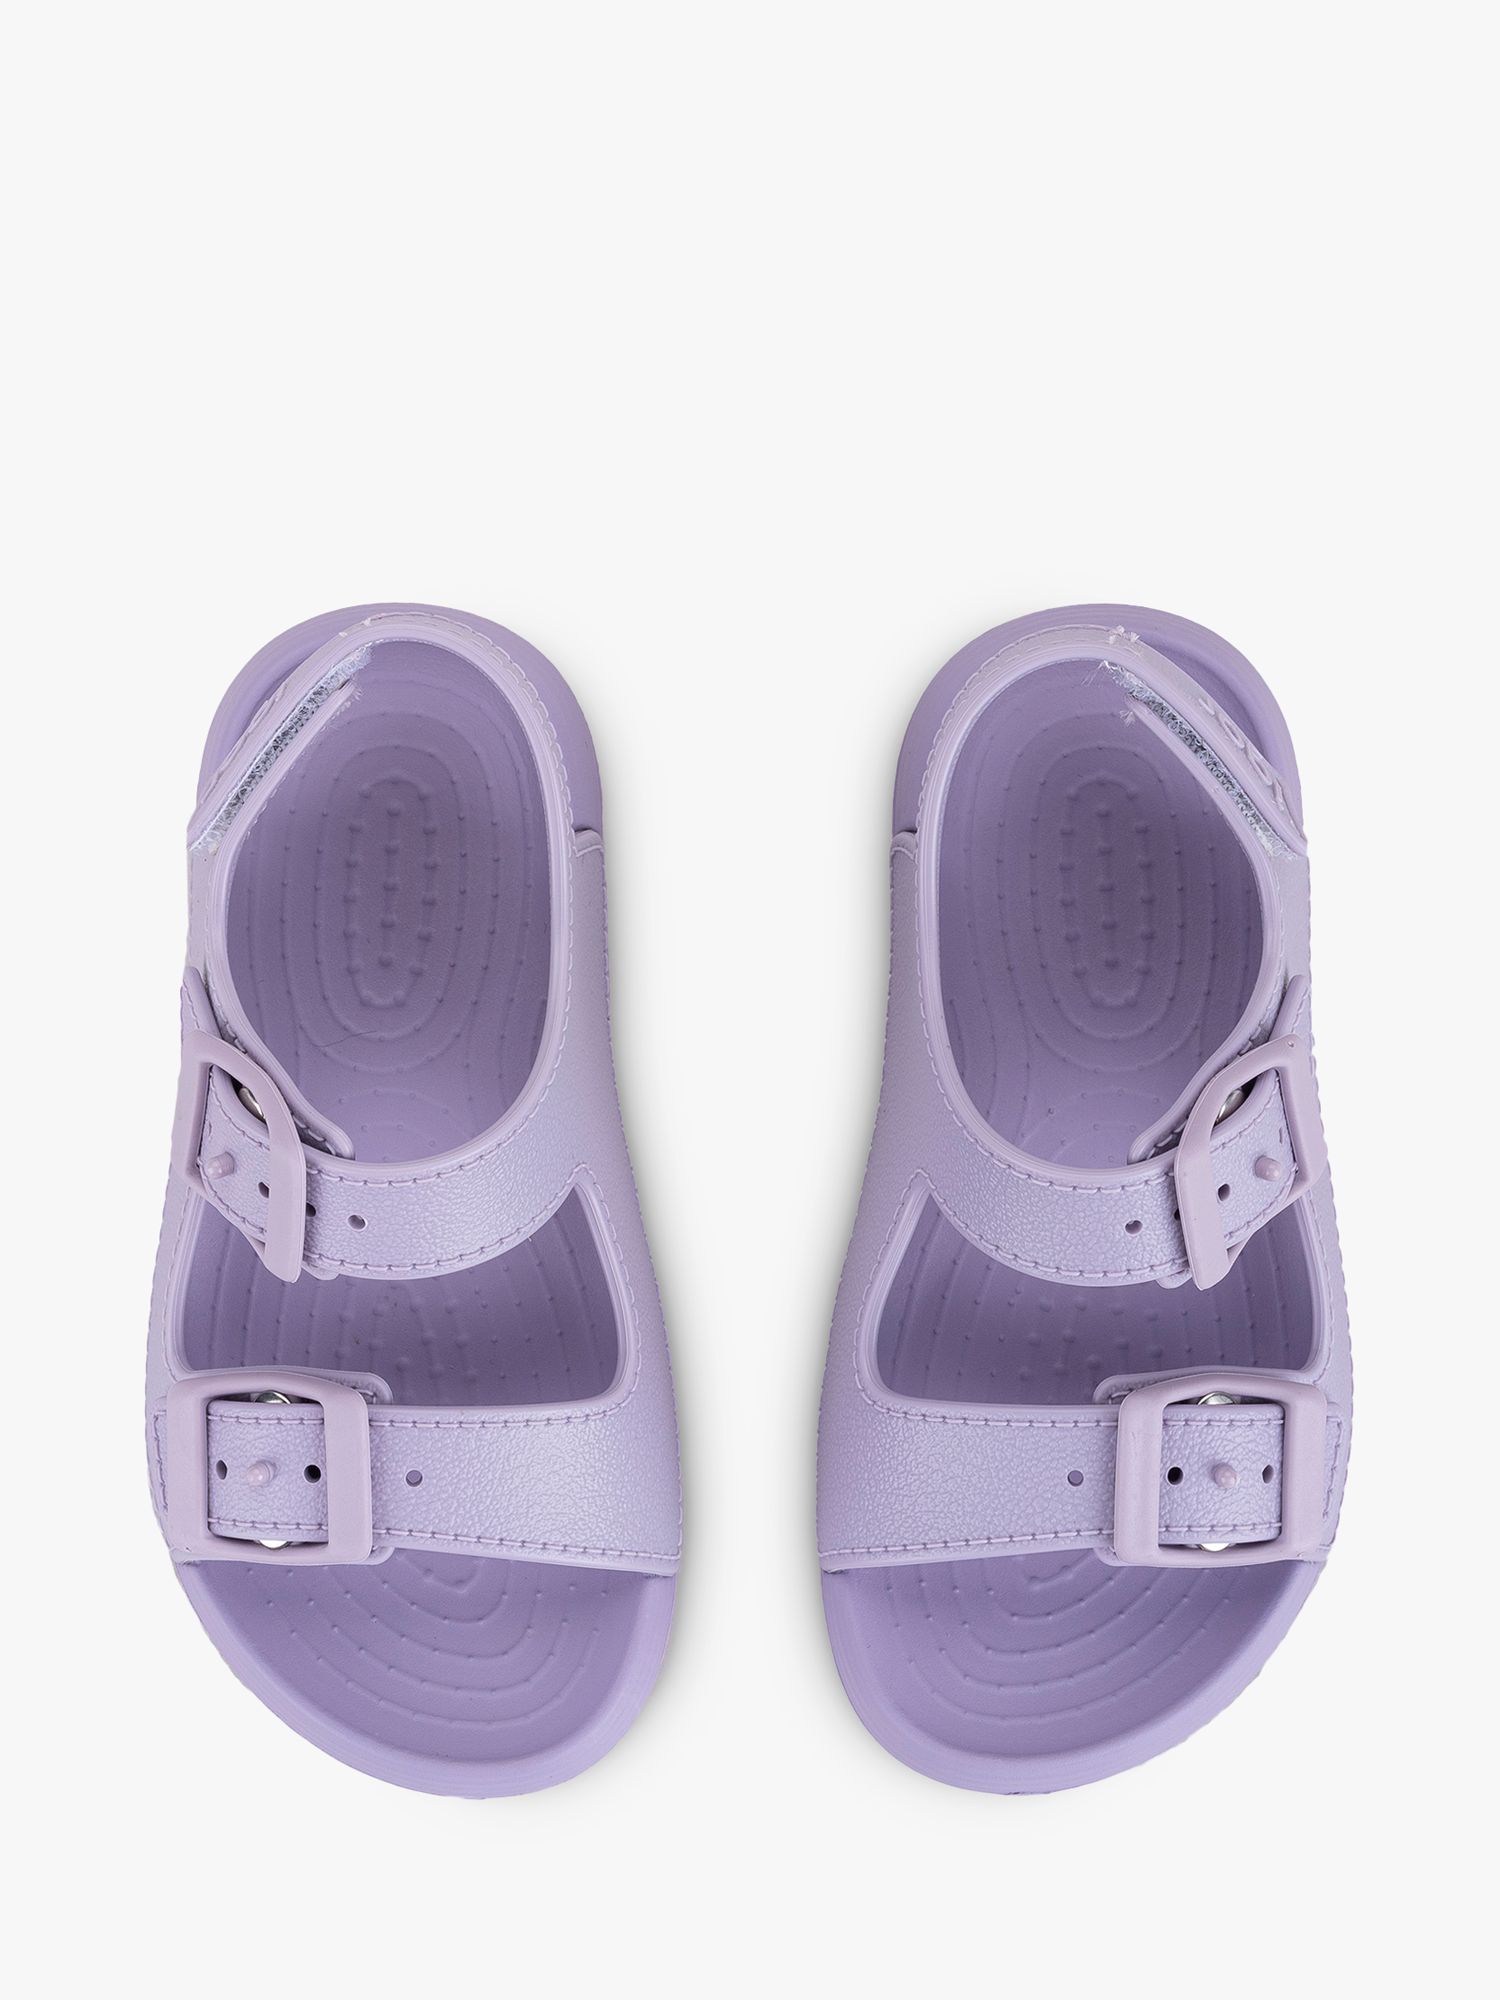 IGOR Maui Lightweight Waterproof Sandals, Lilac, EU28